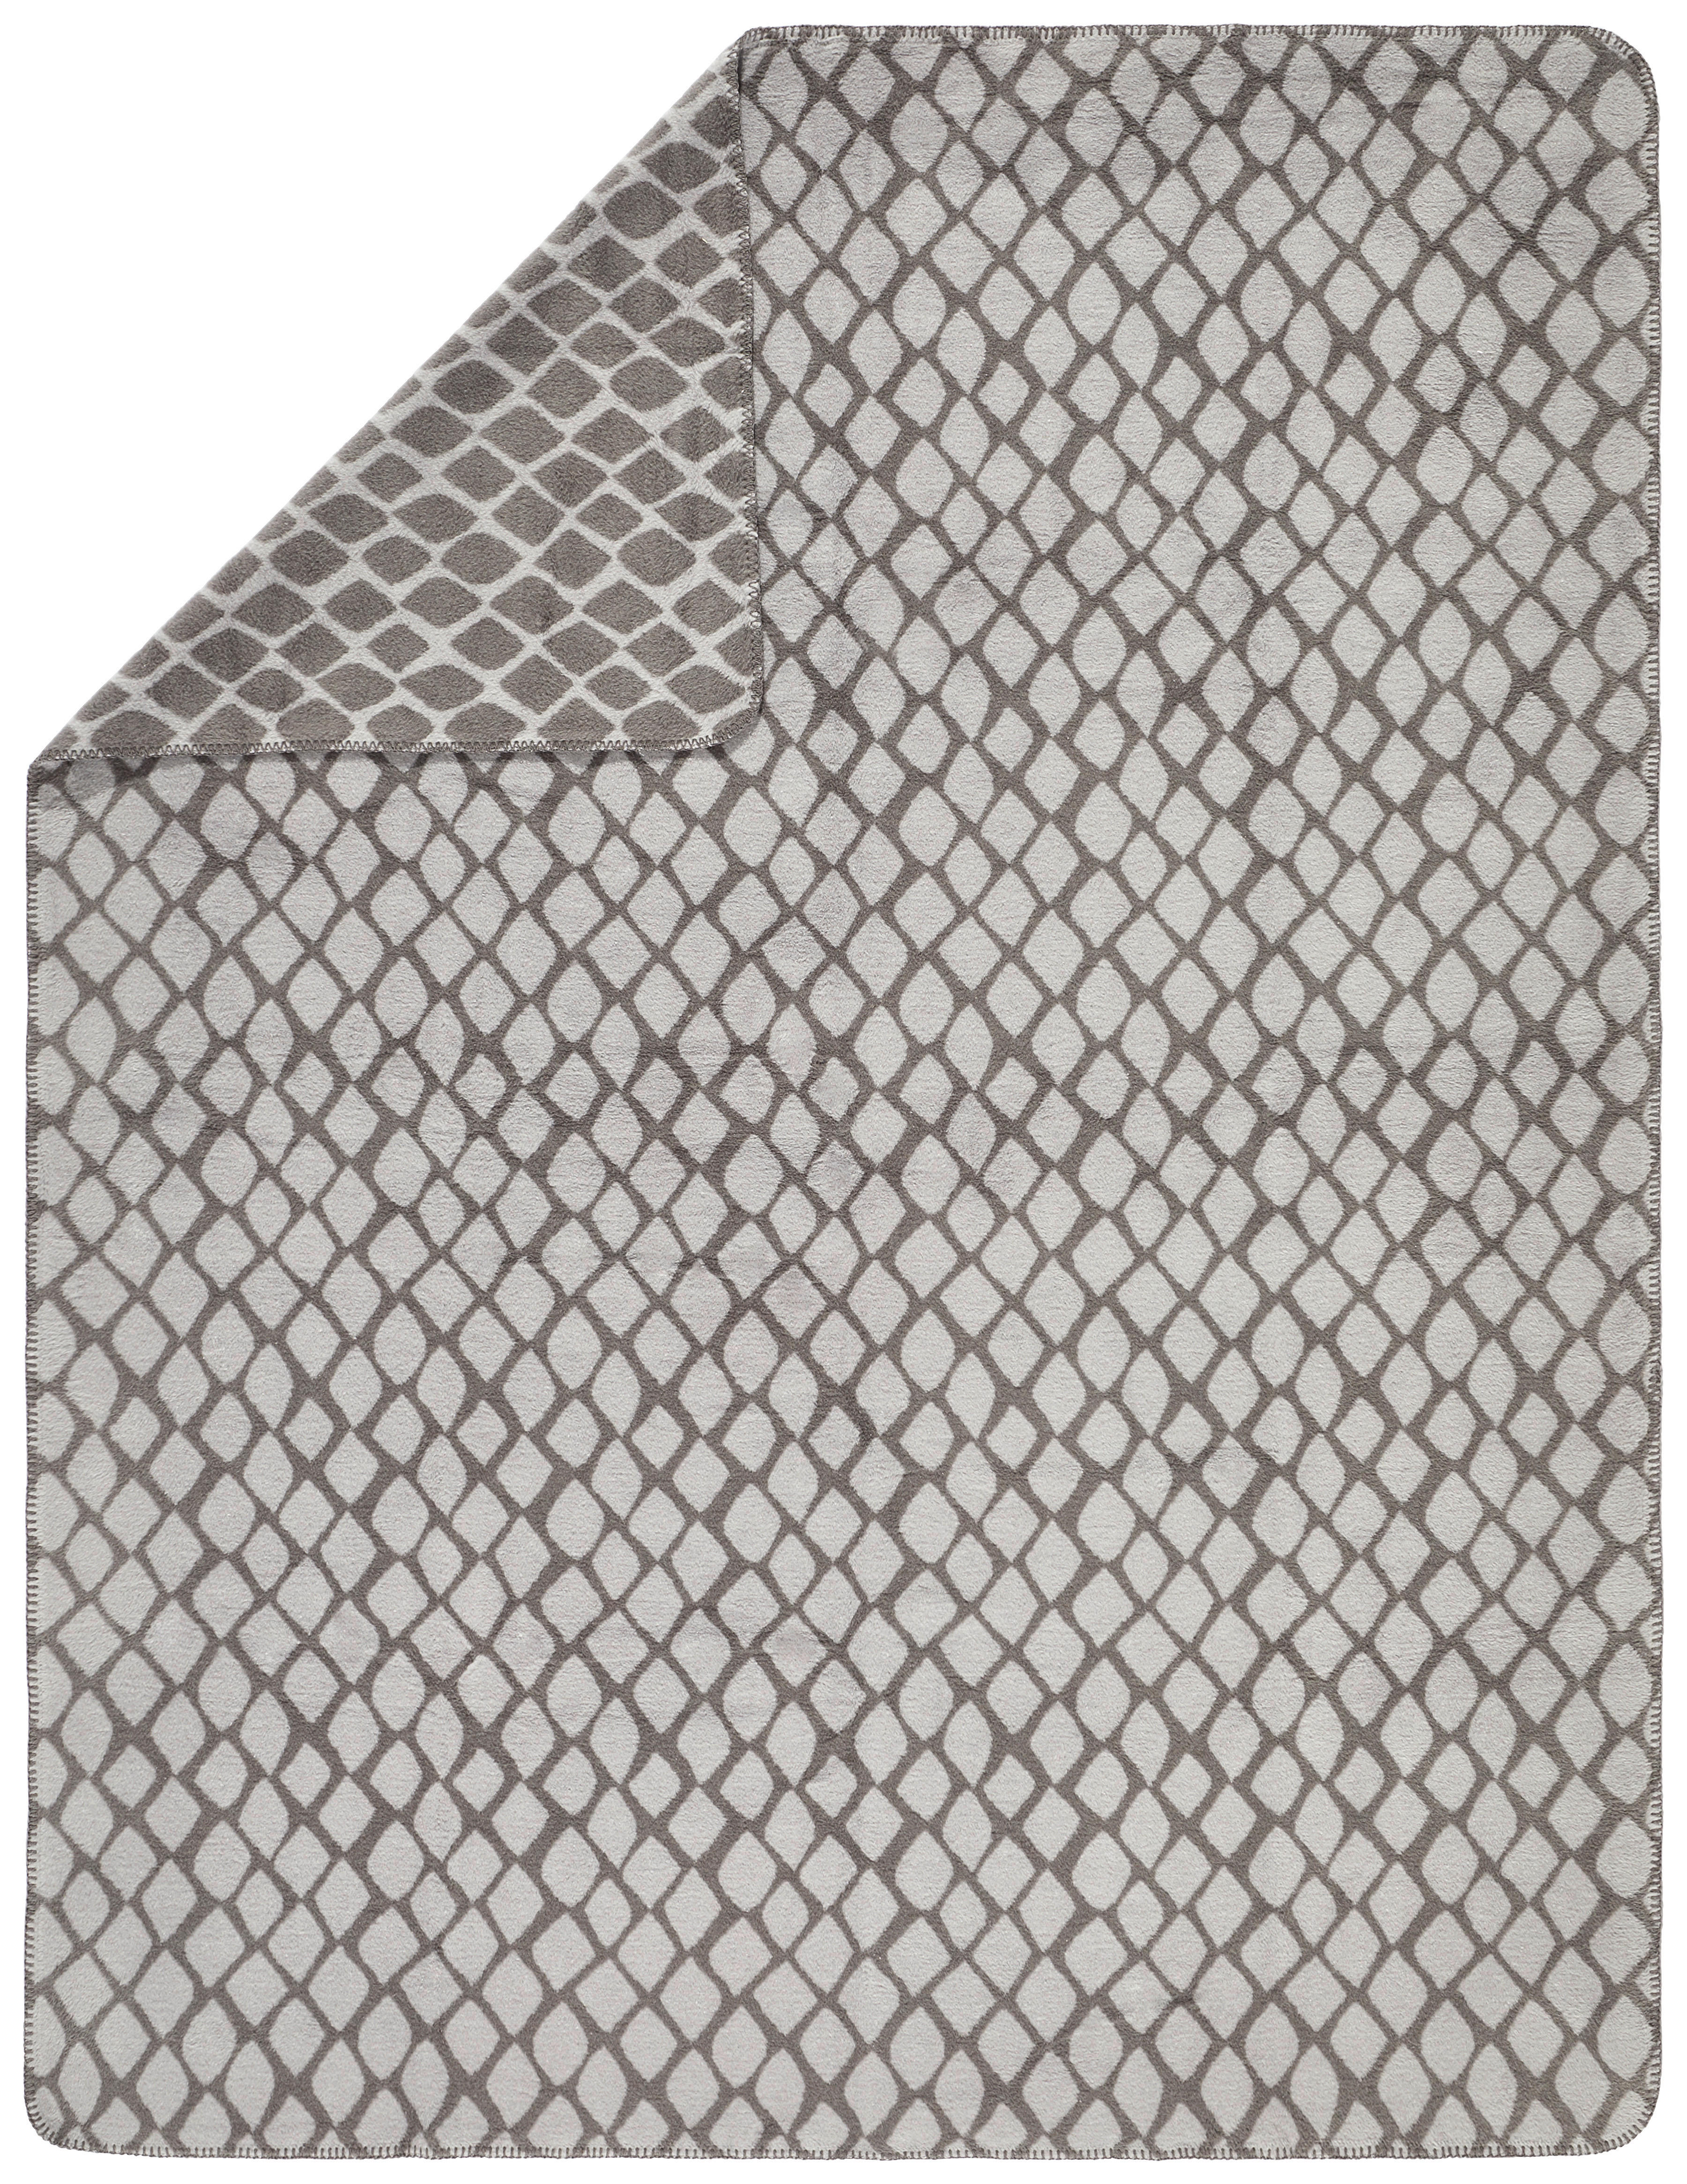 DECKE 150/200 cm  - Anthrazit, Basics, Textil (150/200cm) - Dieter Knoll